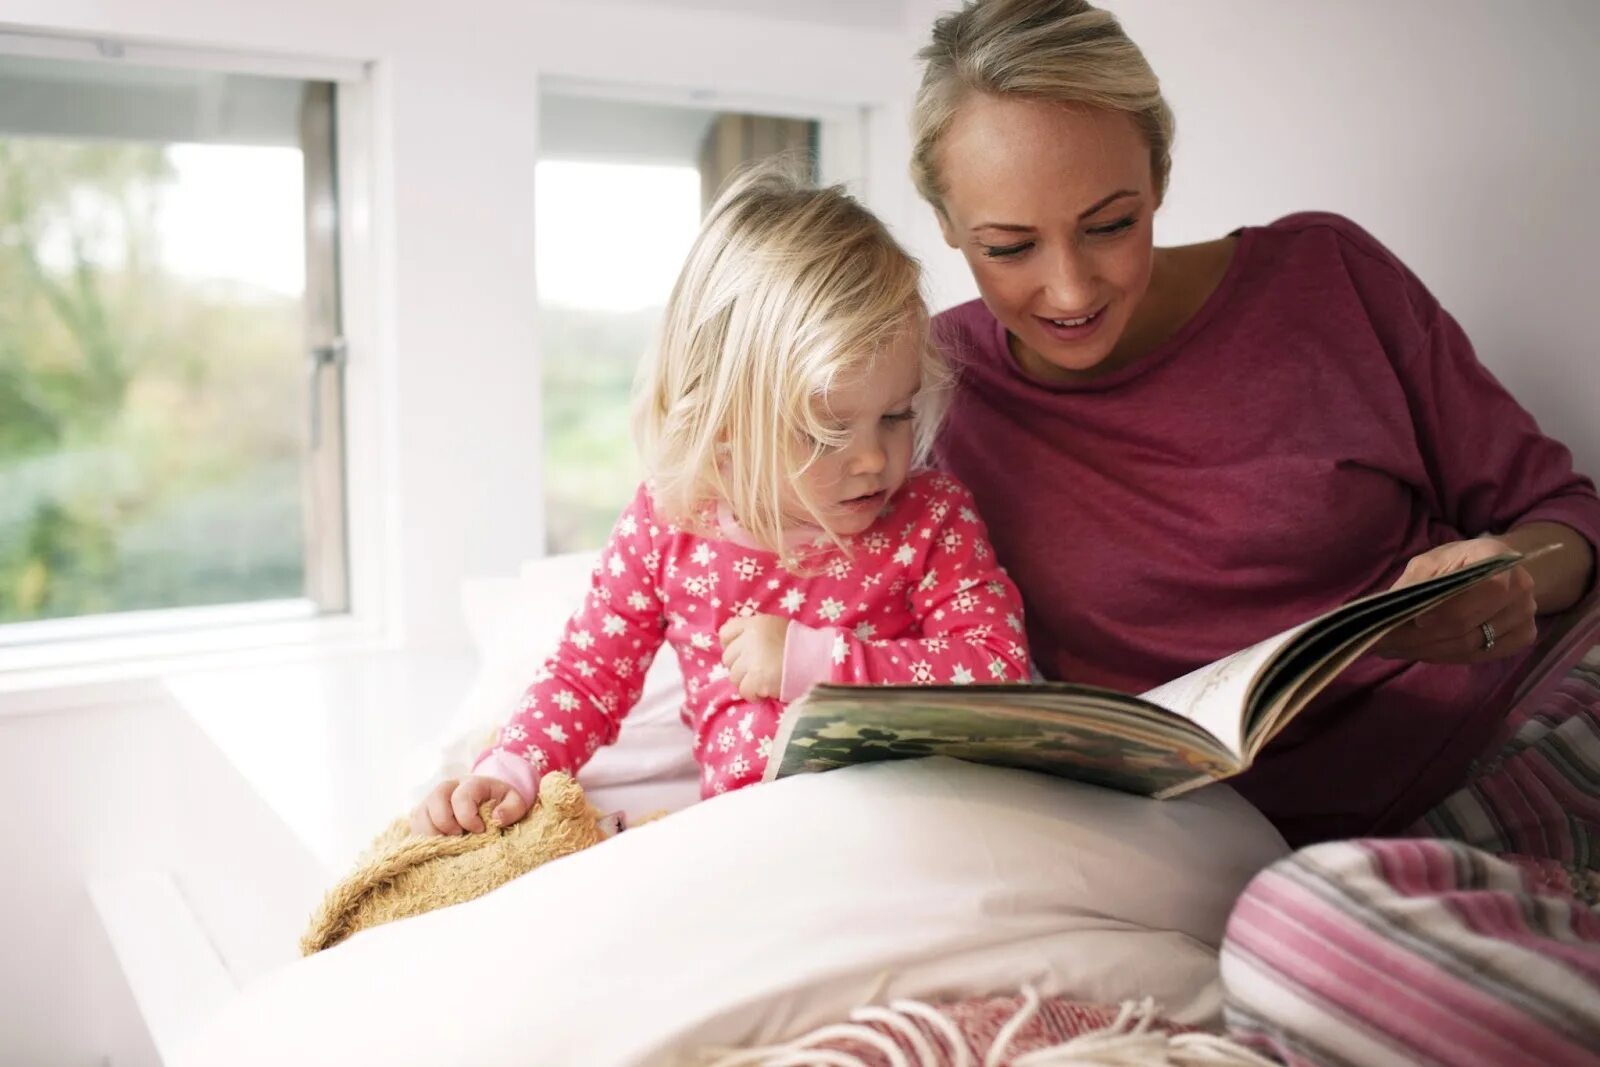 Читать мама с другом. Книги для детей. Чтение для детей. Ребенок с мамой за книгой. Мама читает книгу ребенку.